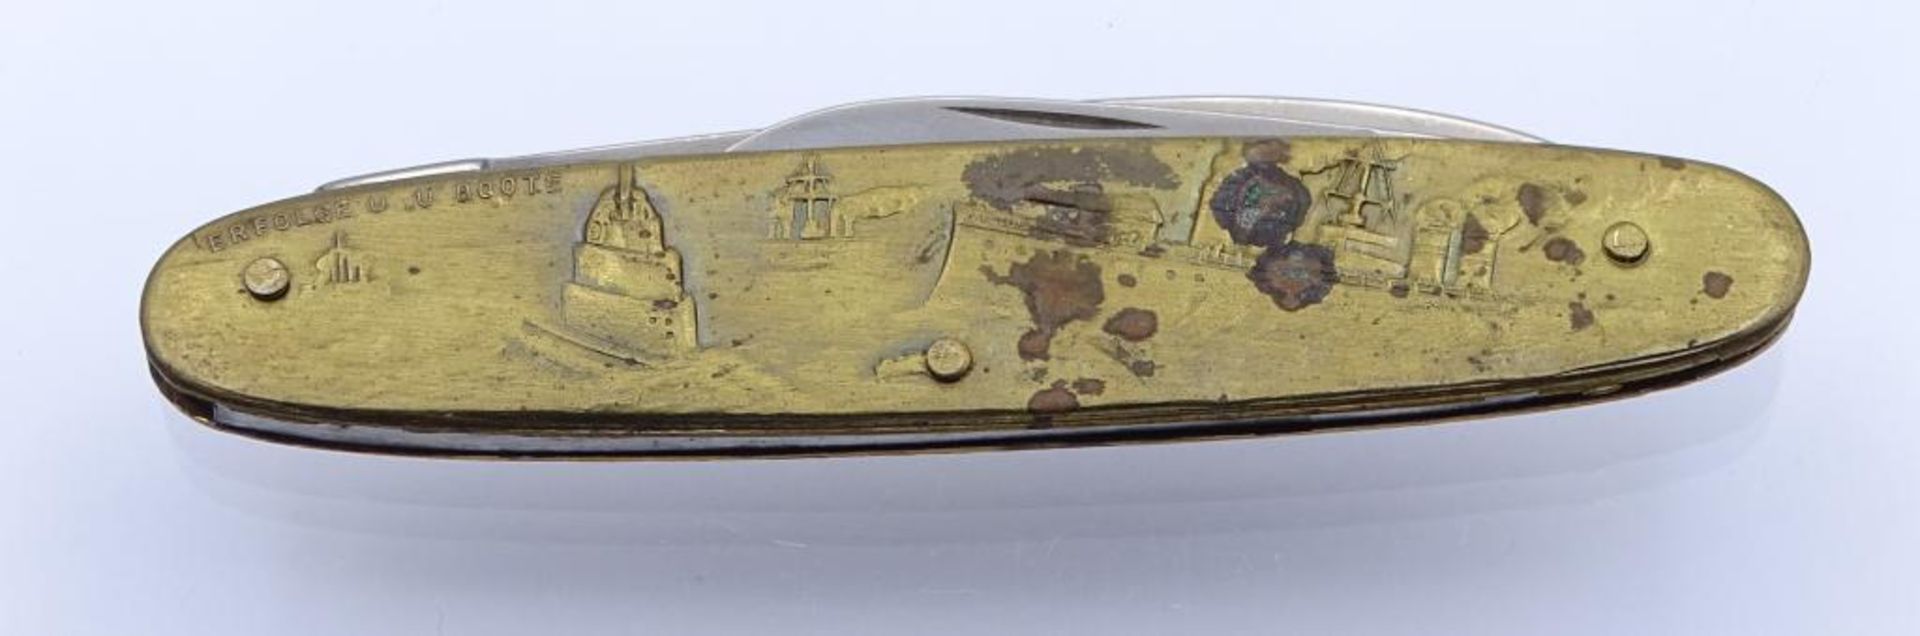 Taschenmesser "Reichskanzler Adolf Hitler",L- 8,5cm- - -22.61 % buyer's premium on the hammer - Bild 5 aus 5